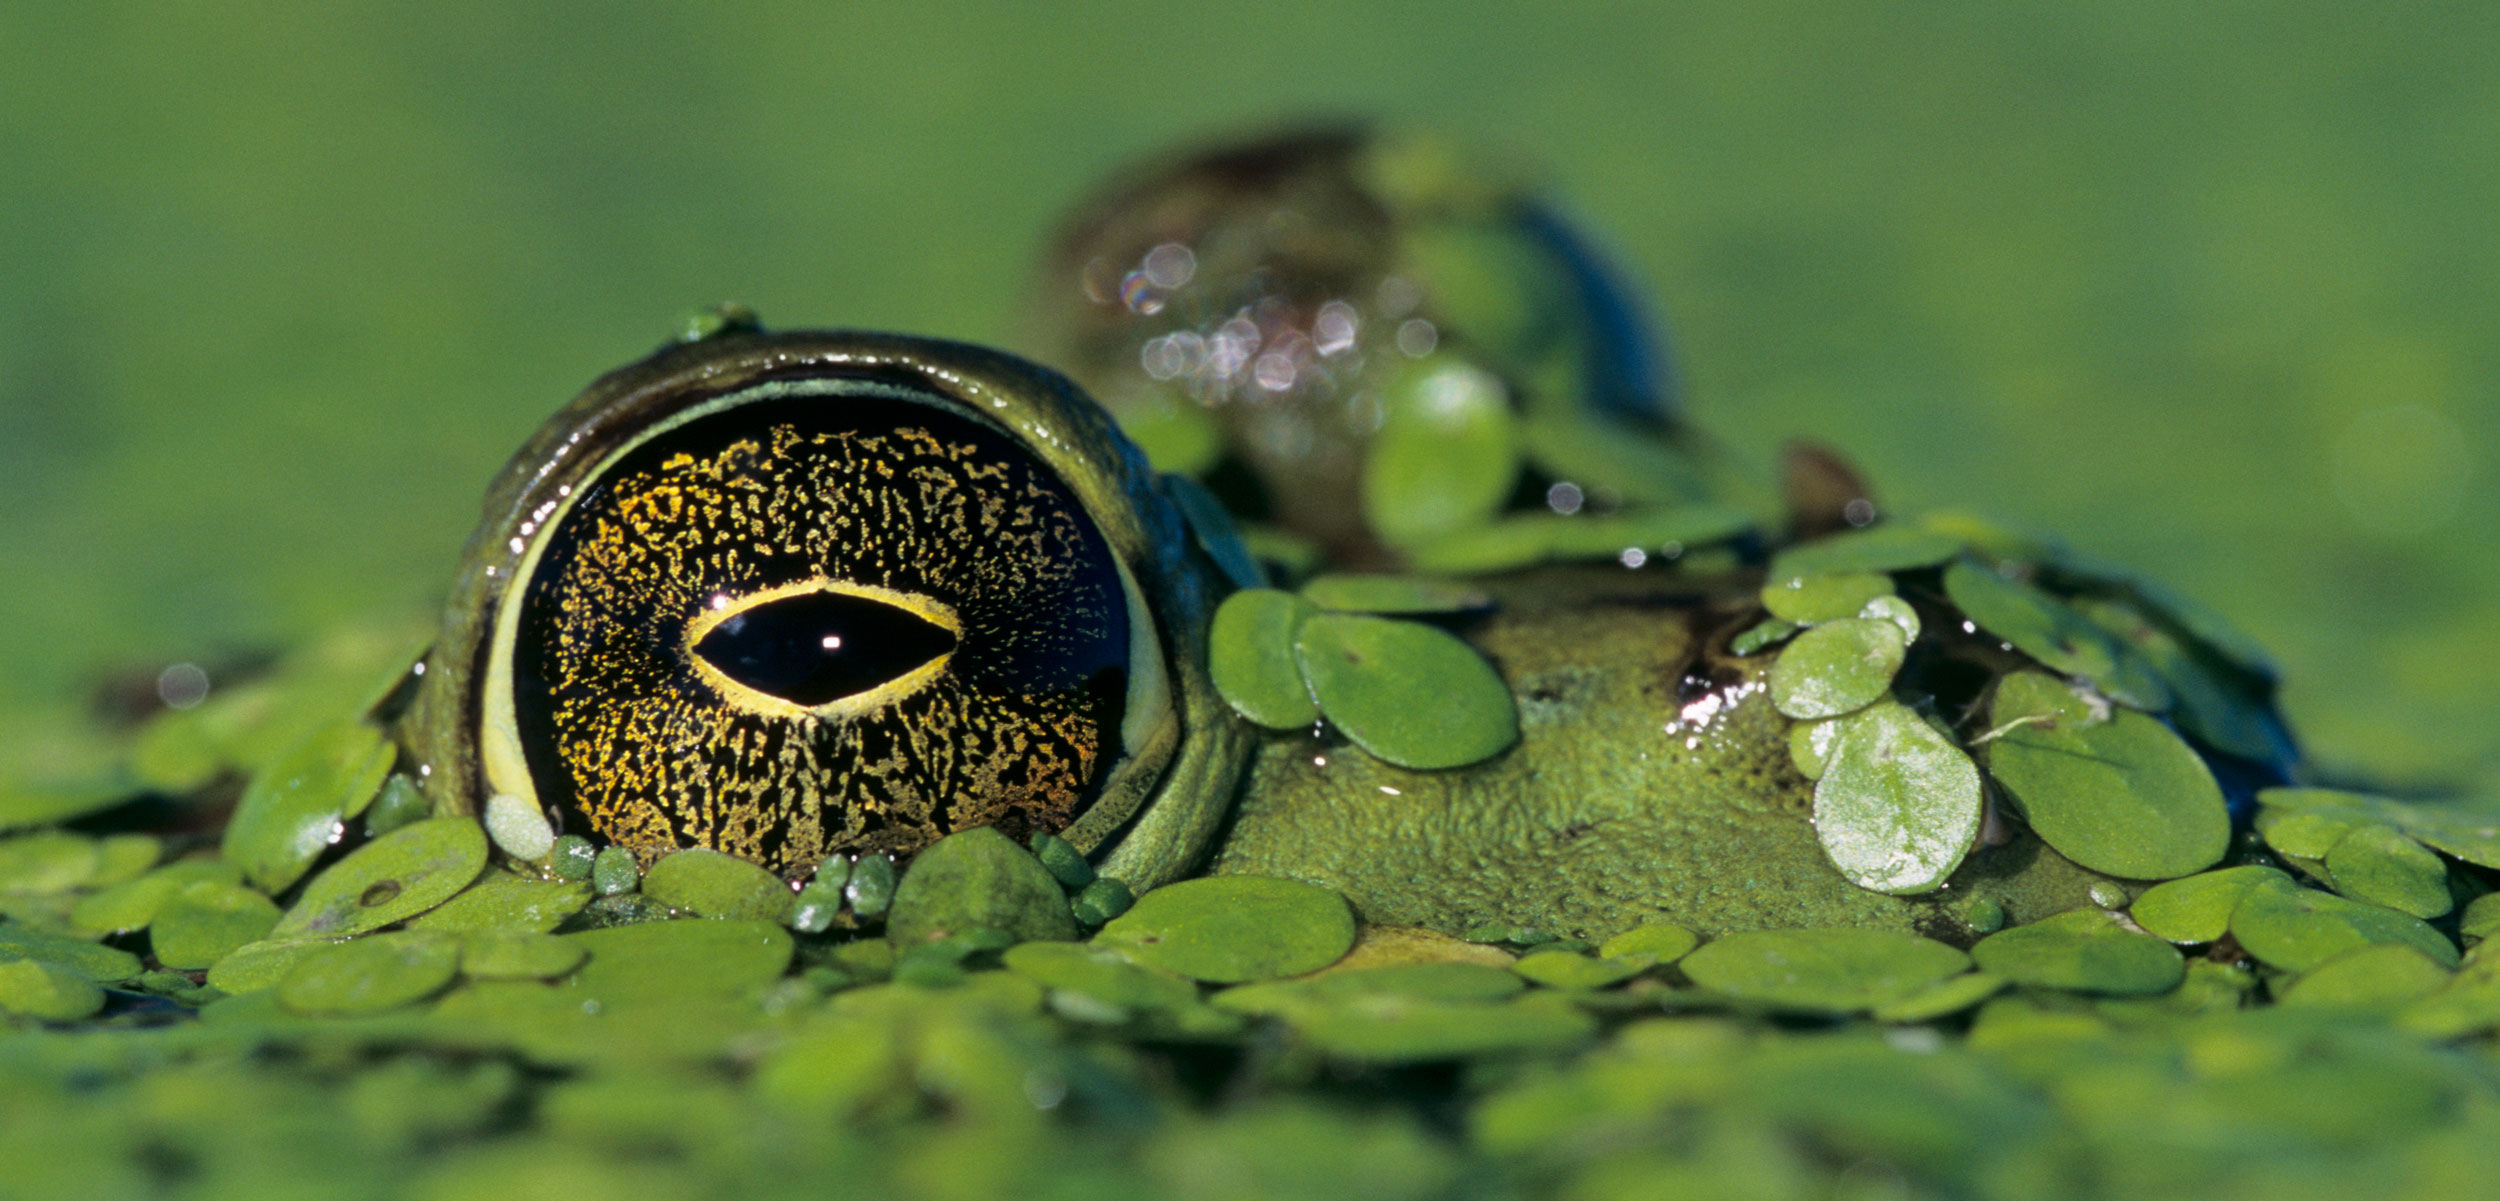 american bullfrog